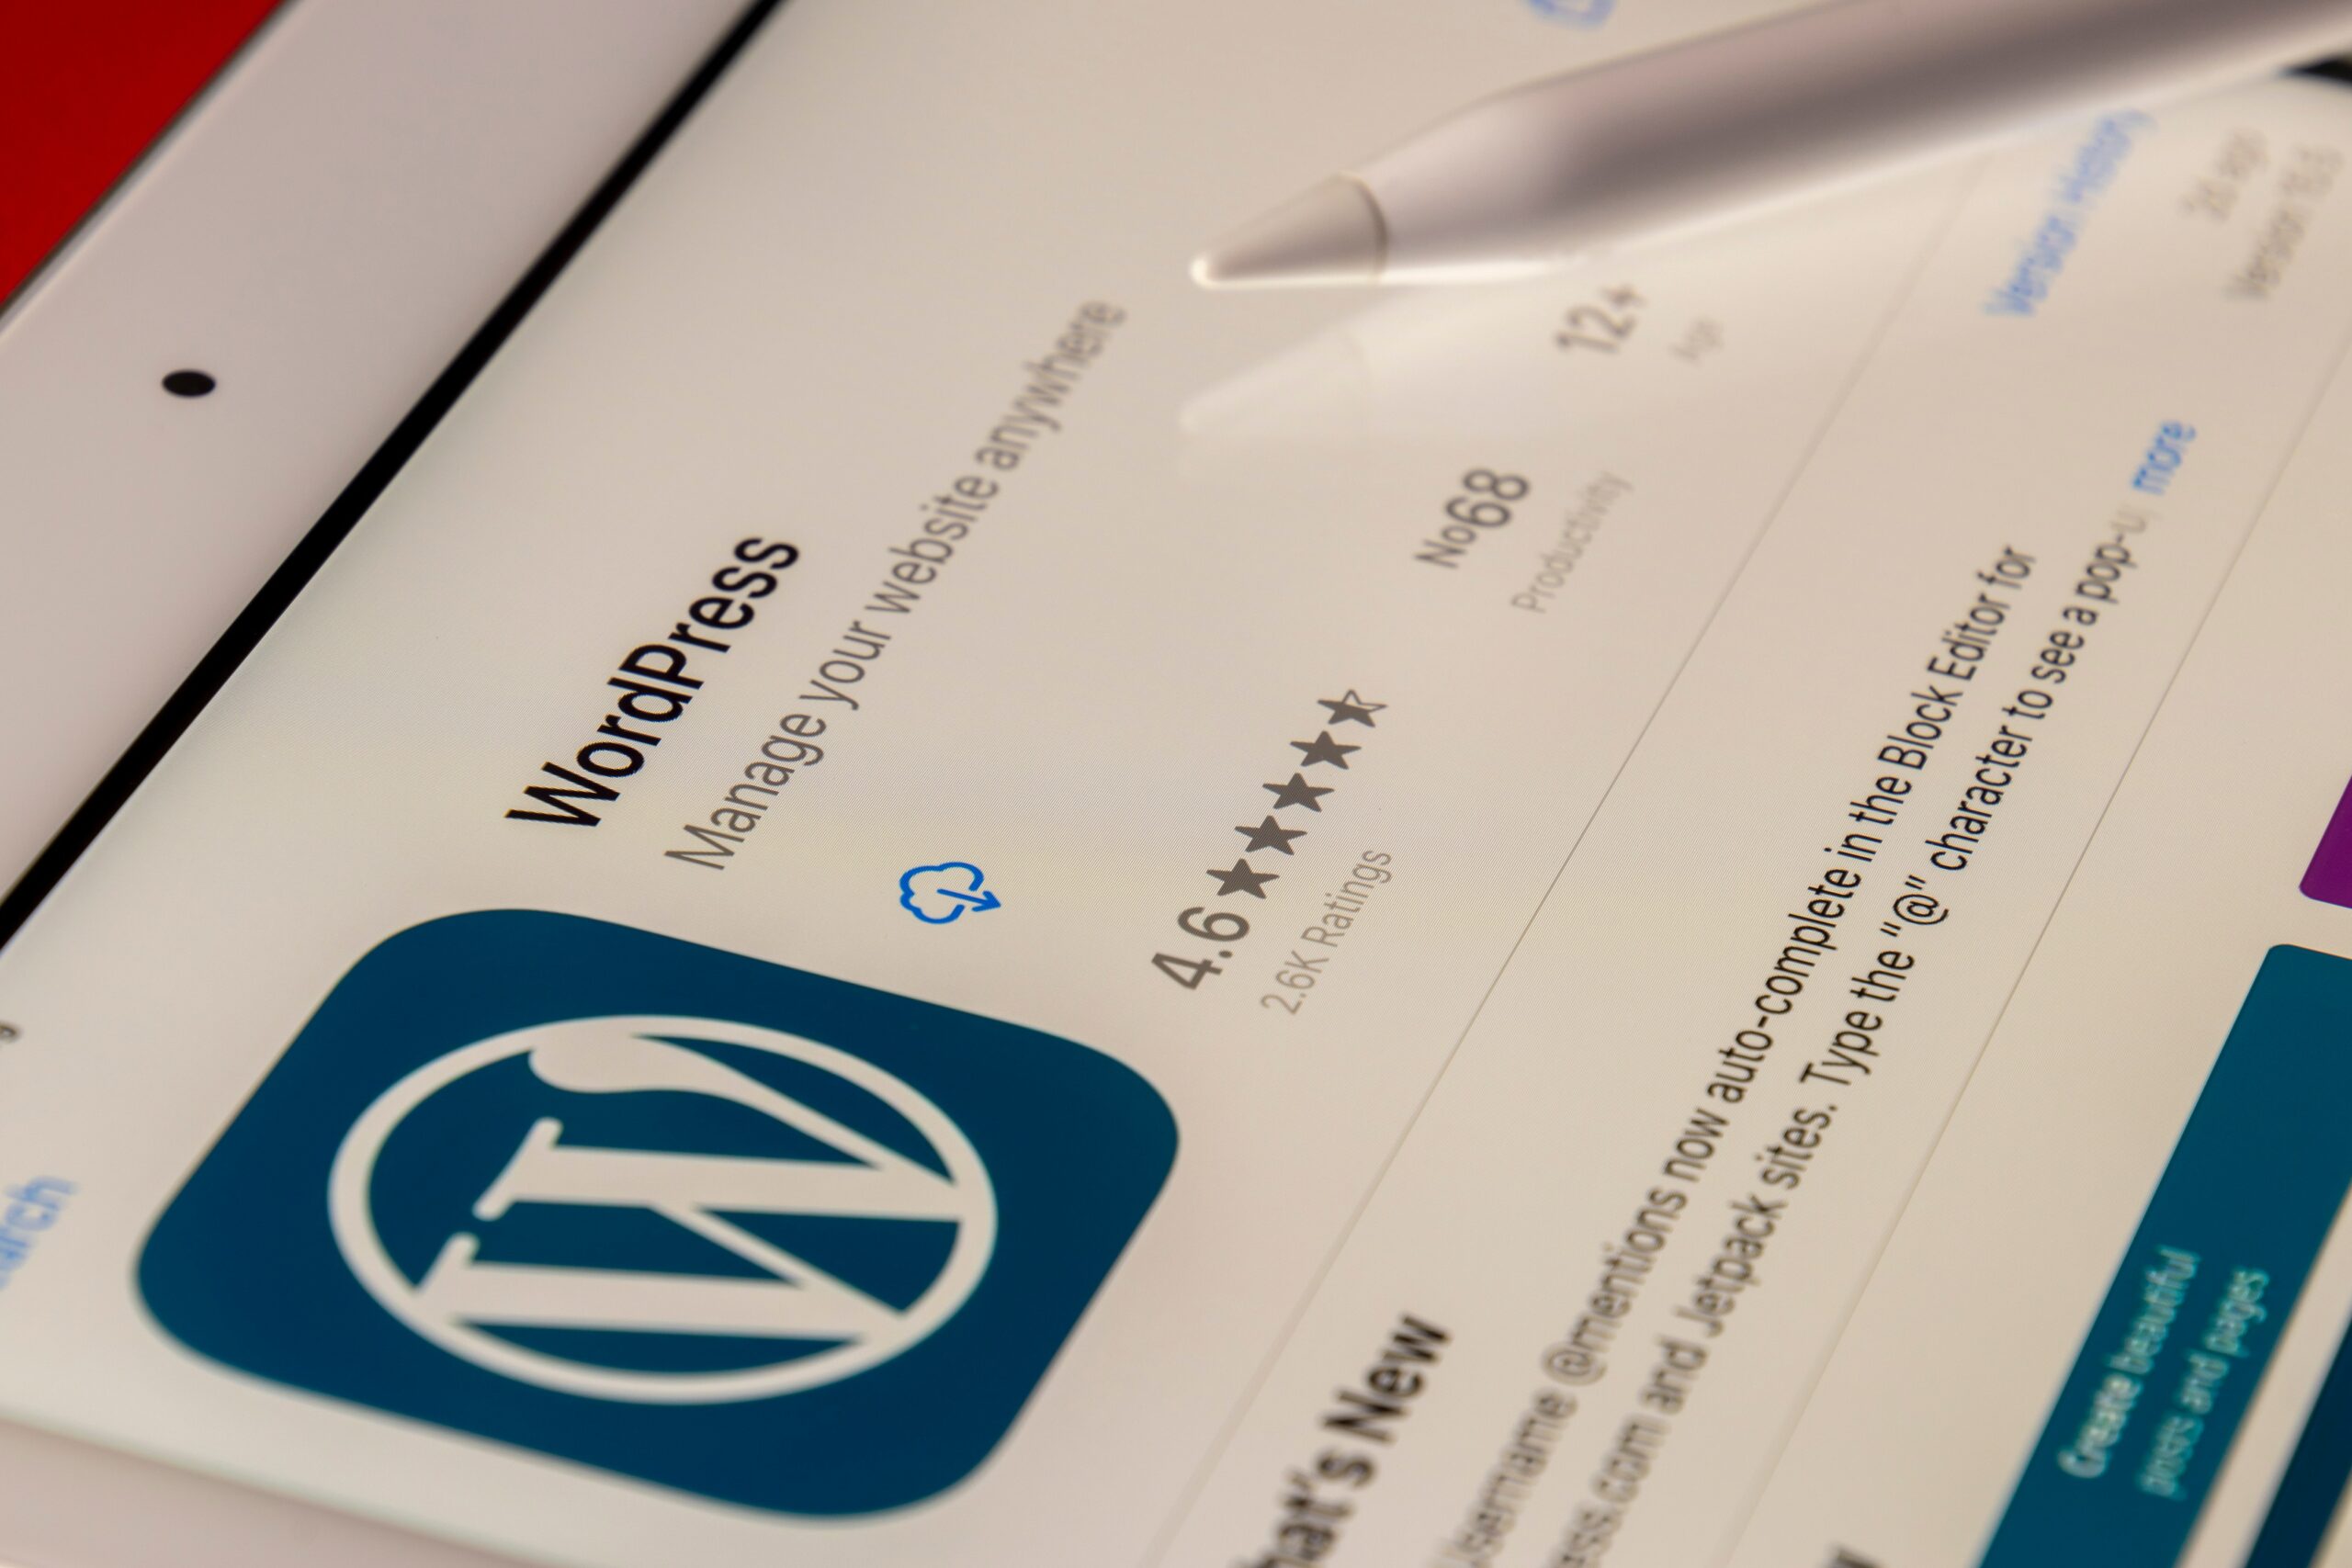 Wordpress app download 5 stars ipad screen